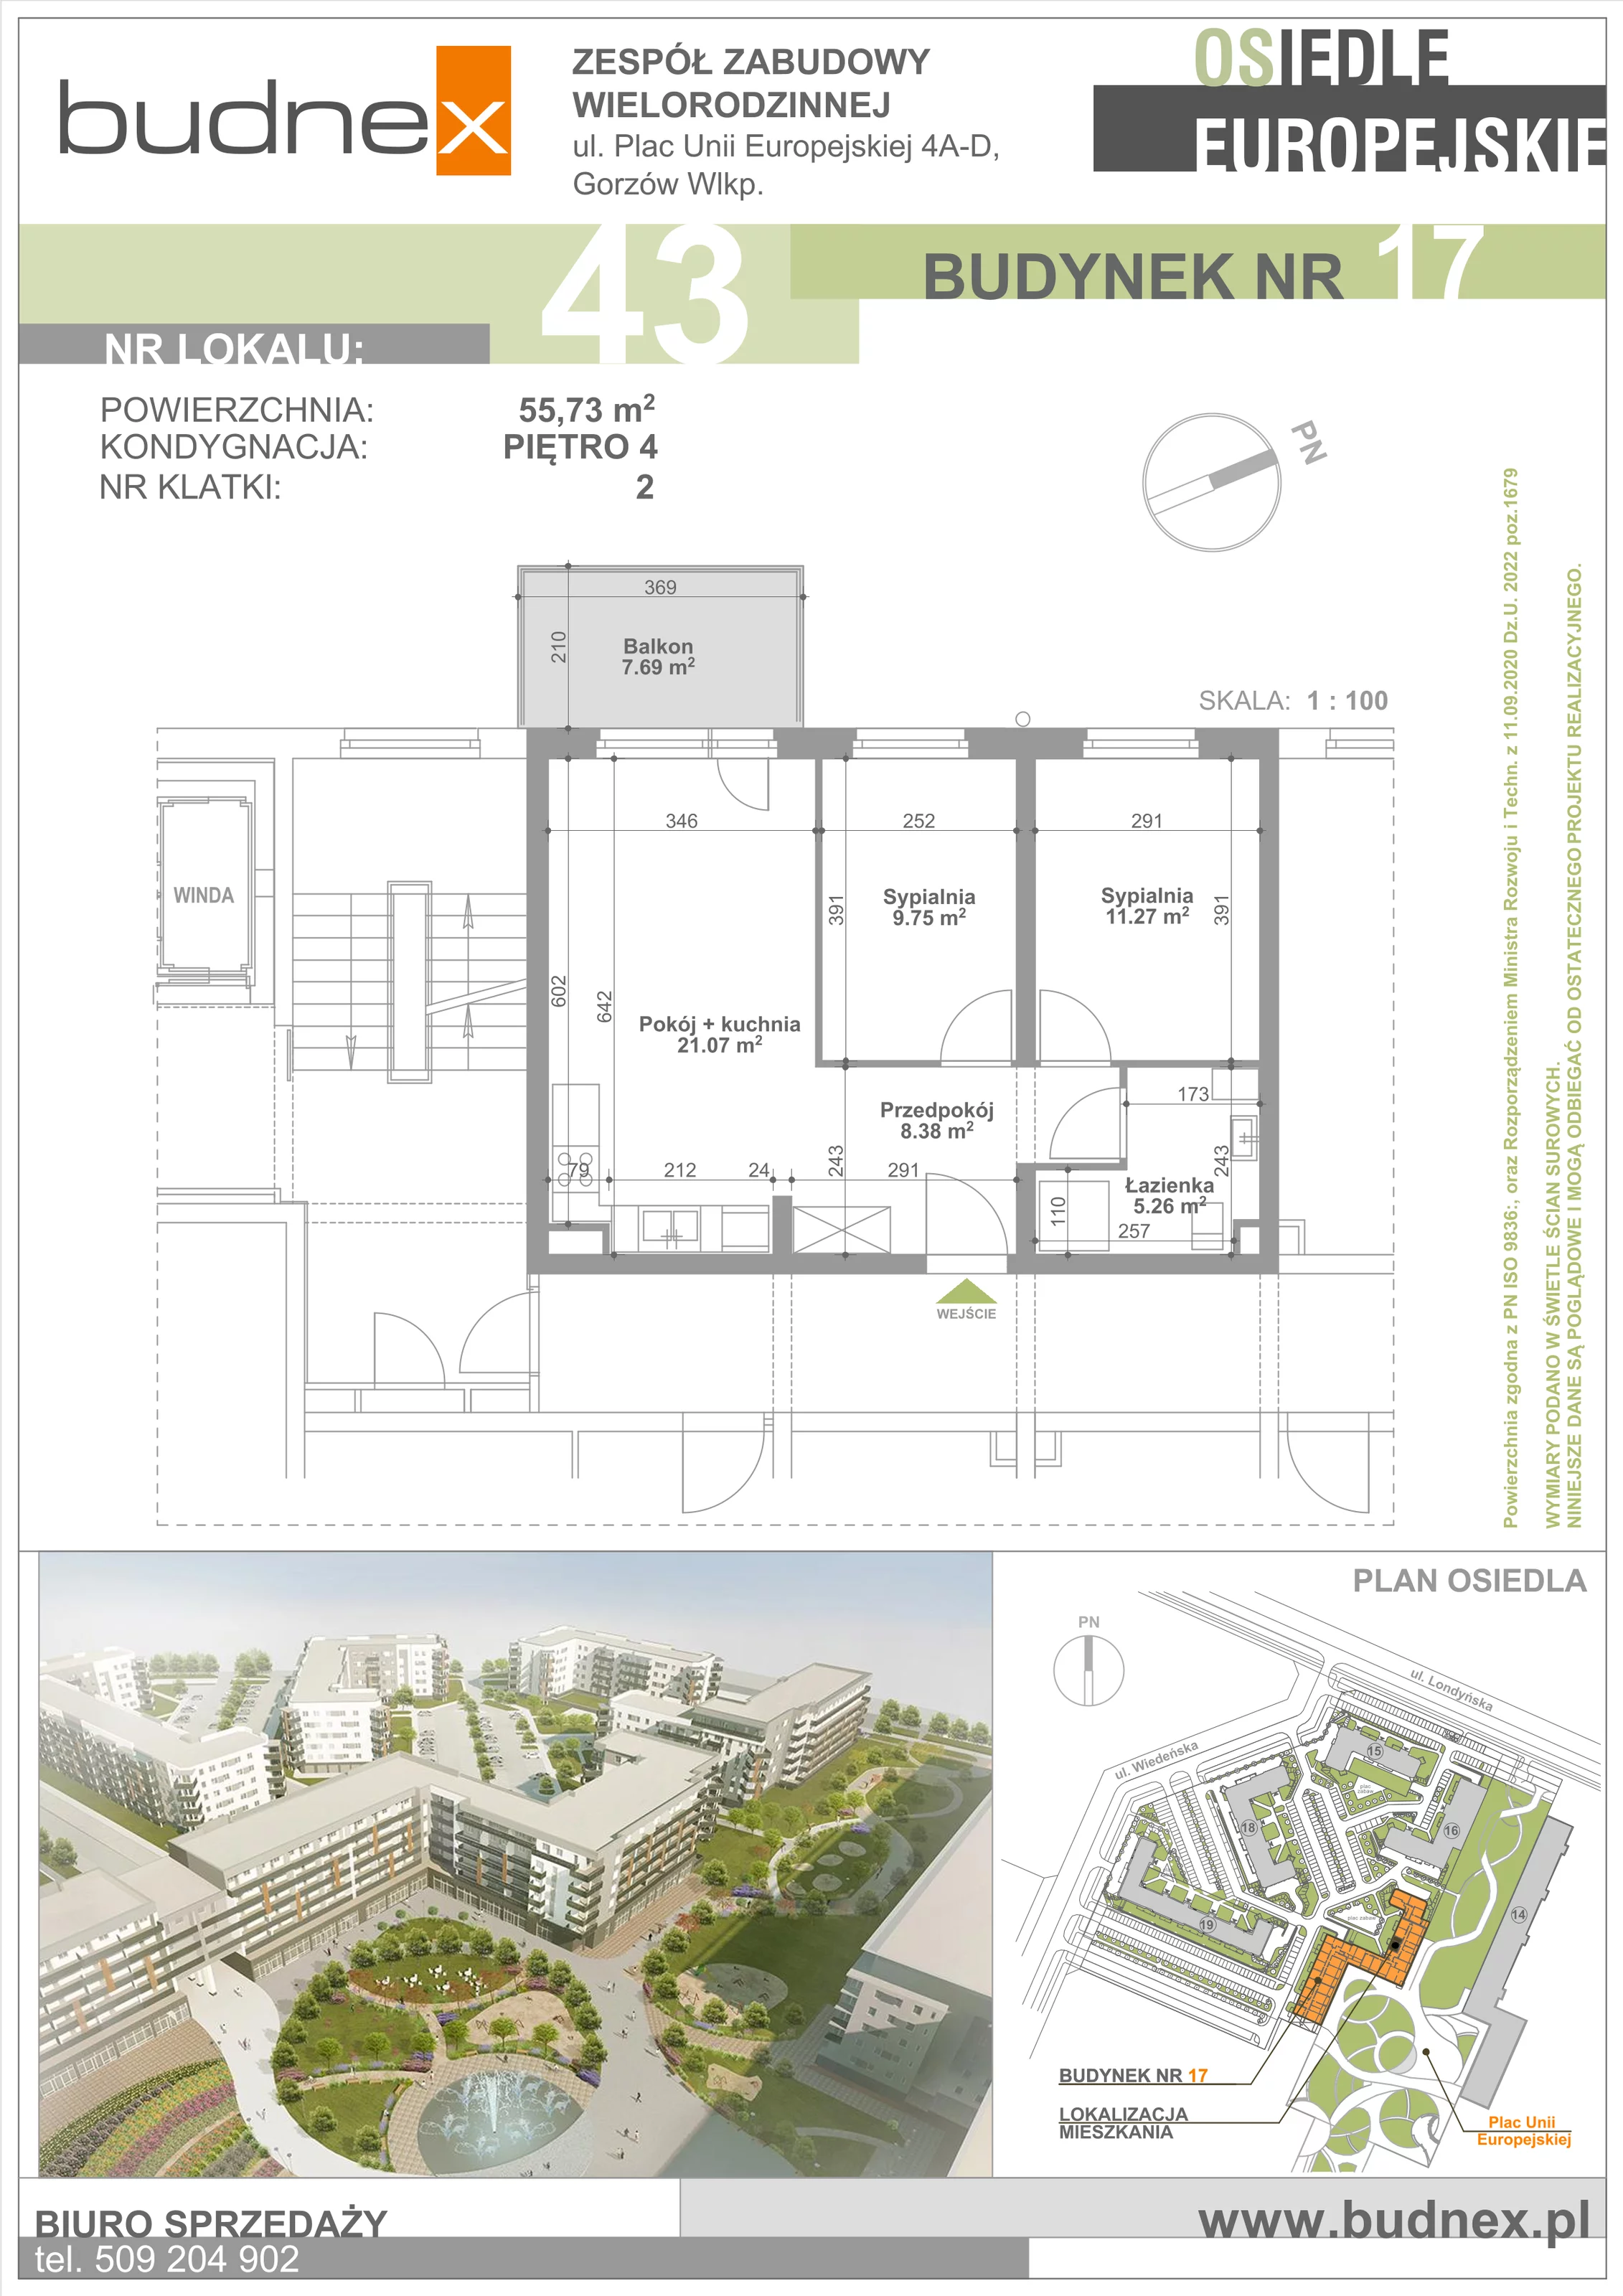 Mieszkanie 55,73 m², piętro 4, oferta nr 2/M43, Osiedle Europejskie - Budynek 17, Gorzów Wielkopolski, Plac Unii Europejskiej 4A-D